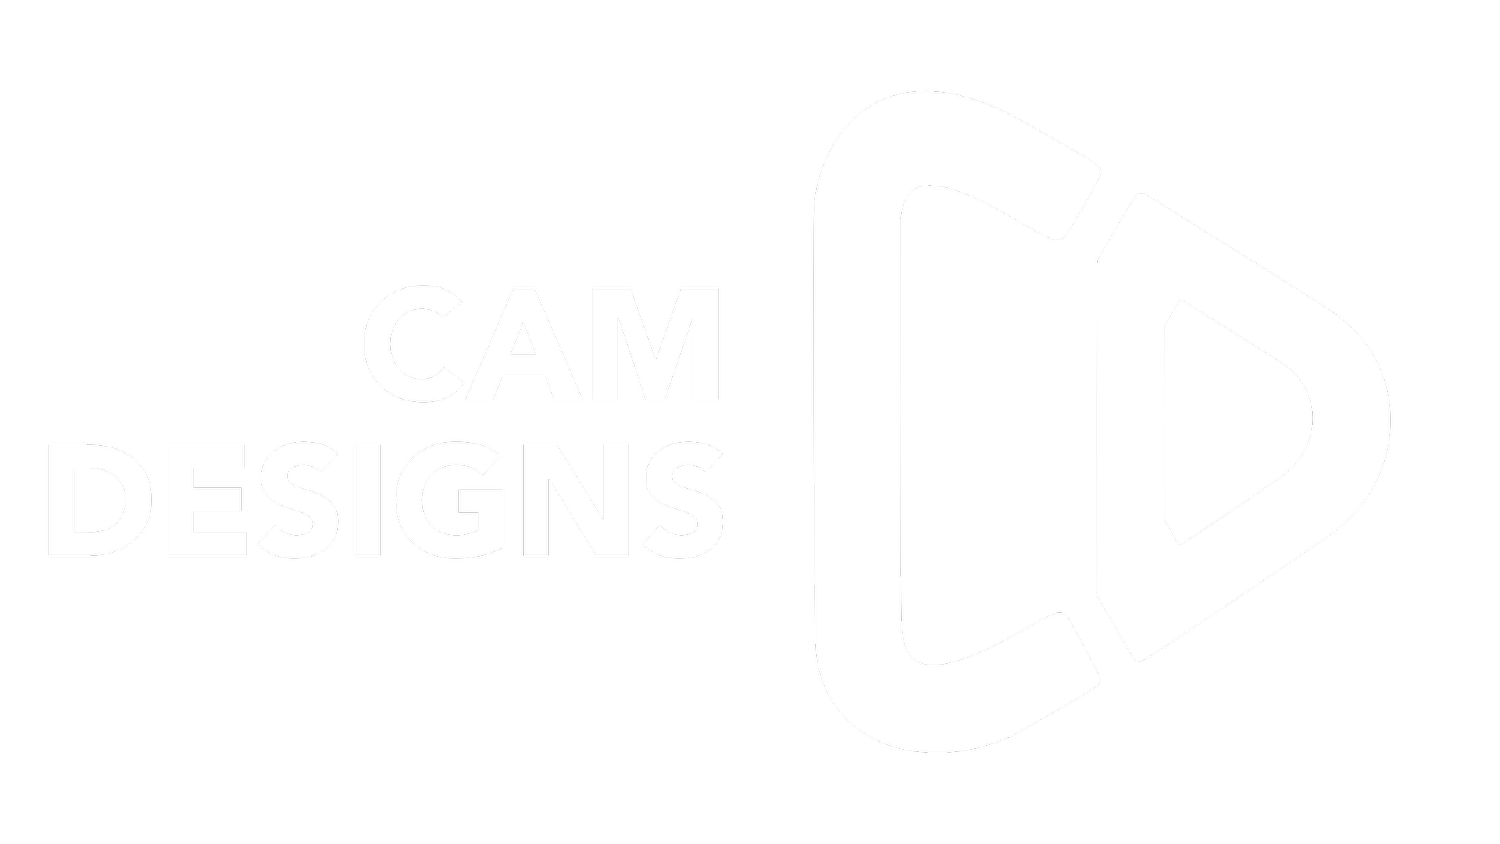 CAM DESIGNS